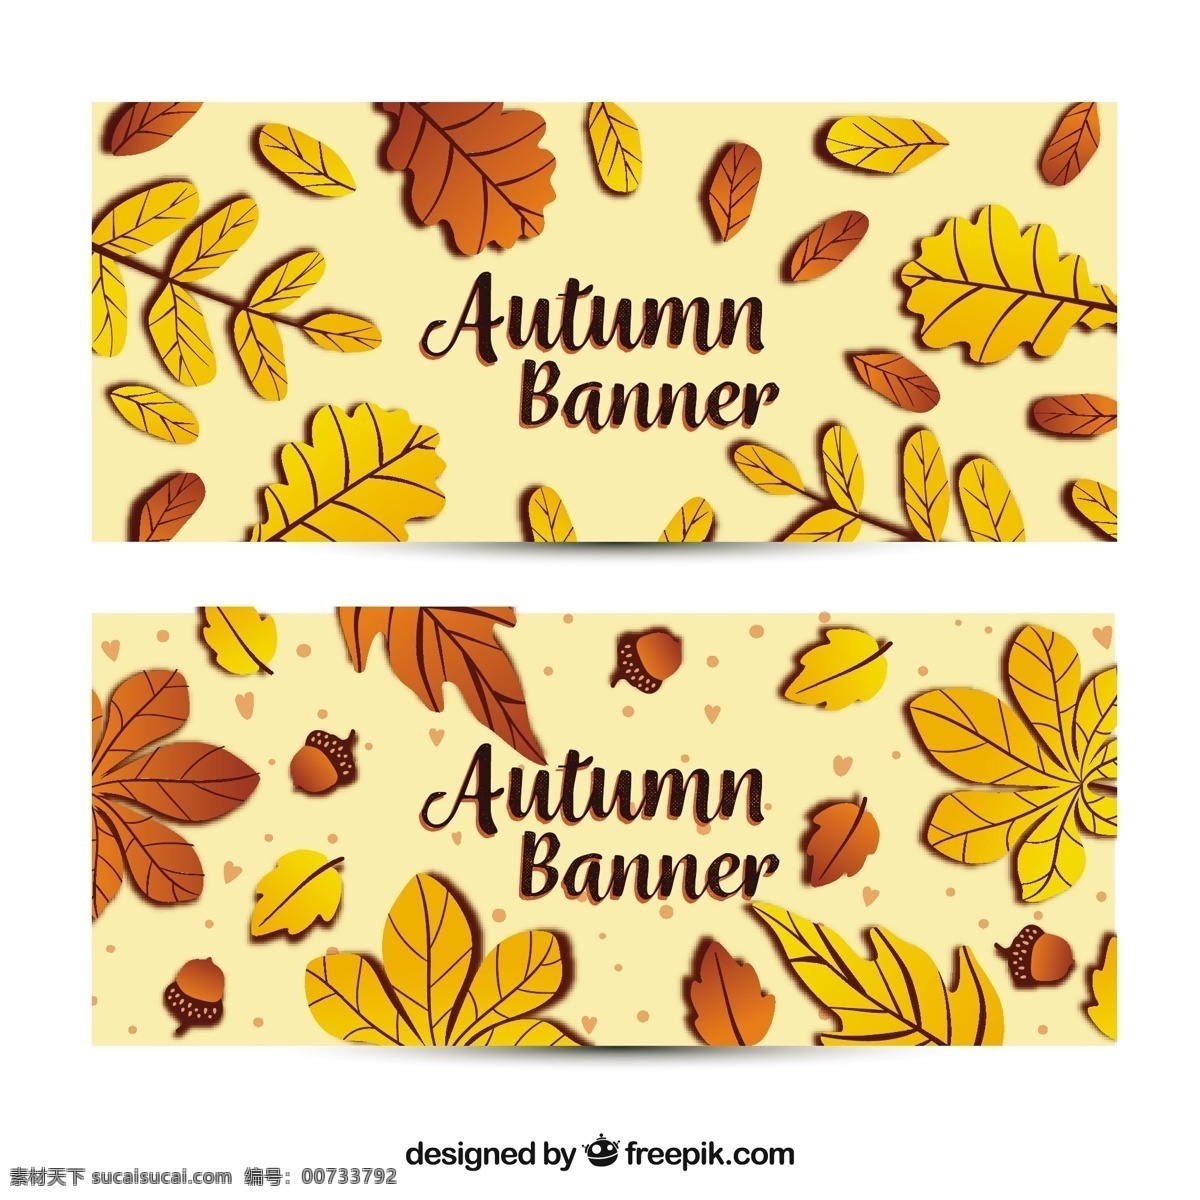 暖色的秋旗 旗帜 模板 叶 自然 横幅 可爱 秋天 树叶 色彩丰富 平 秋季 现代 树木 色彩 平面设计 凉爽 树枝 温暖